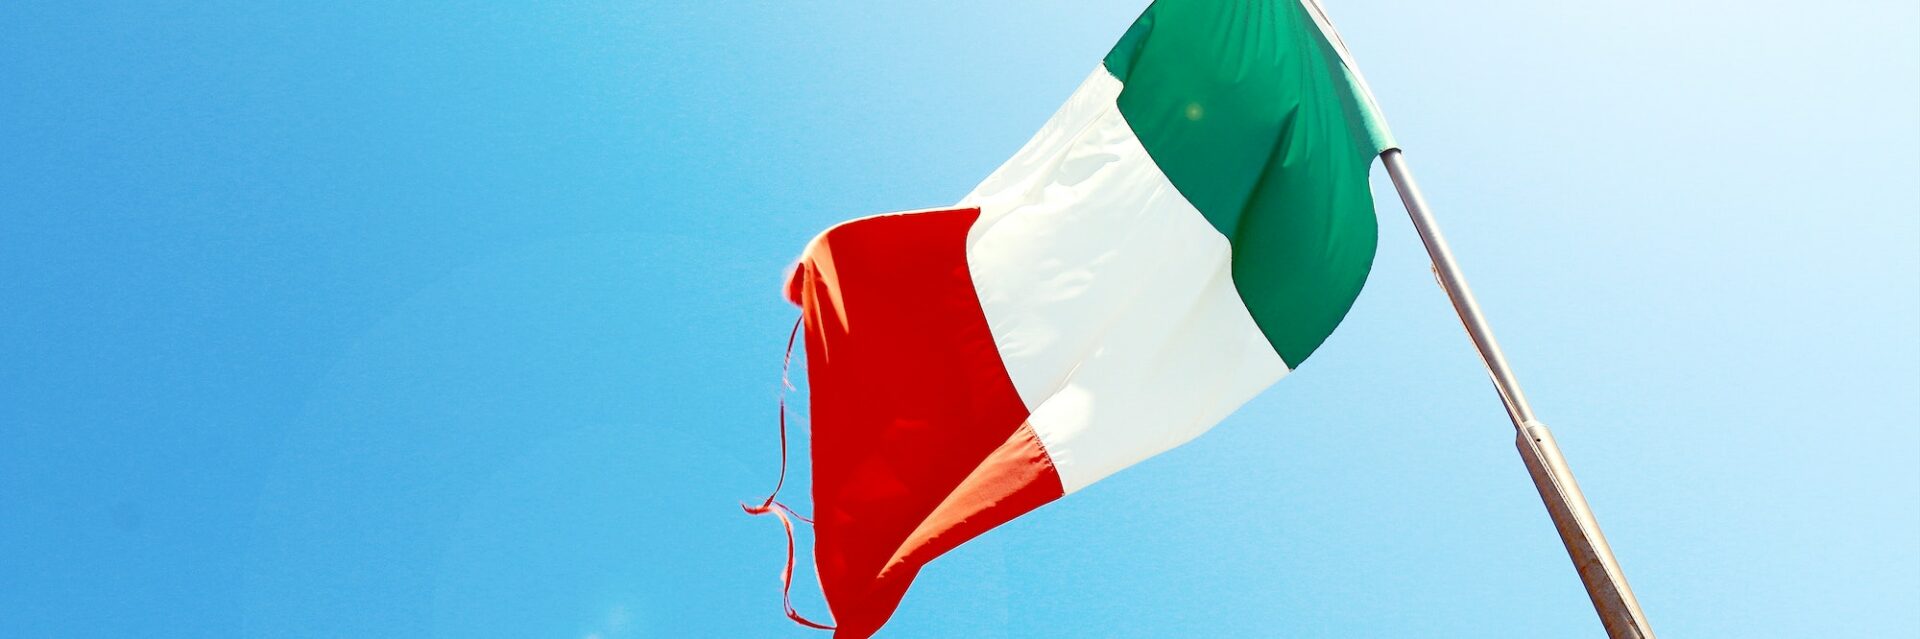 E-Invoicing Italien: Entwicklung, Formate & Anforderungen